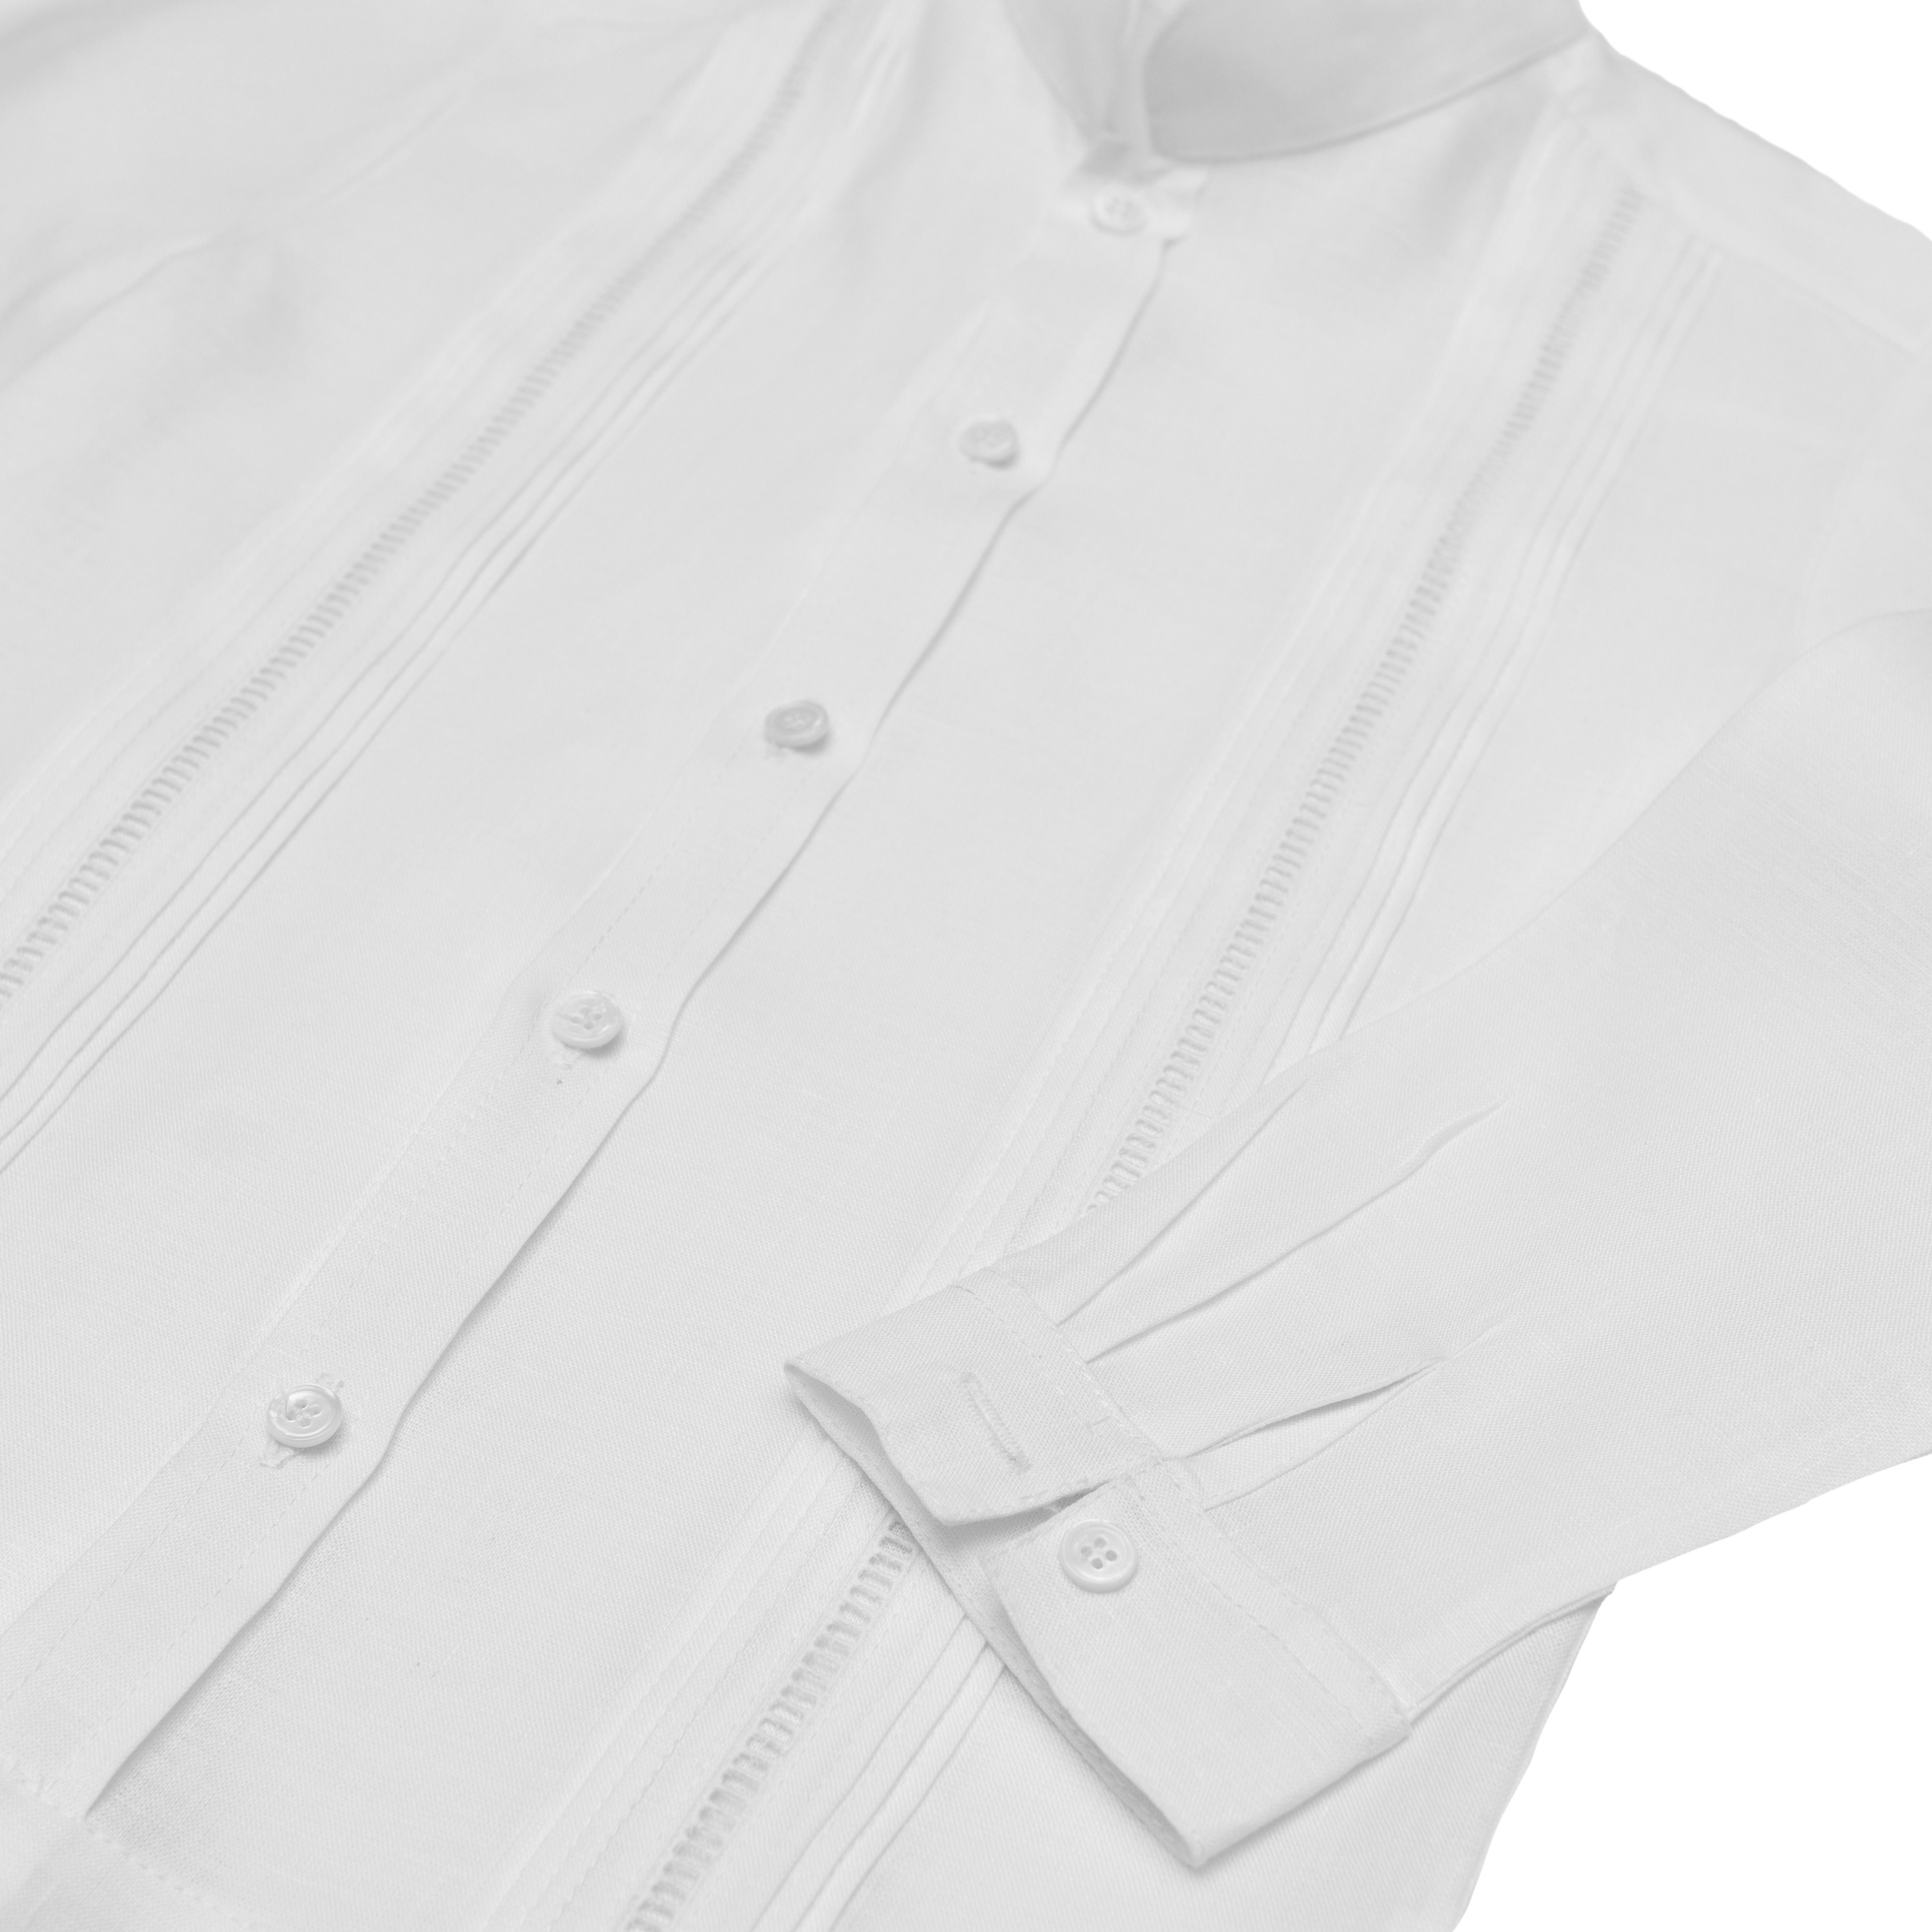 Camisa en lino manga larga entredos de vainica